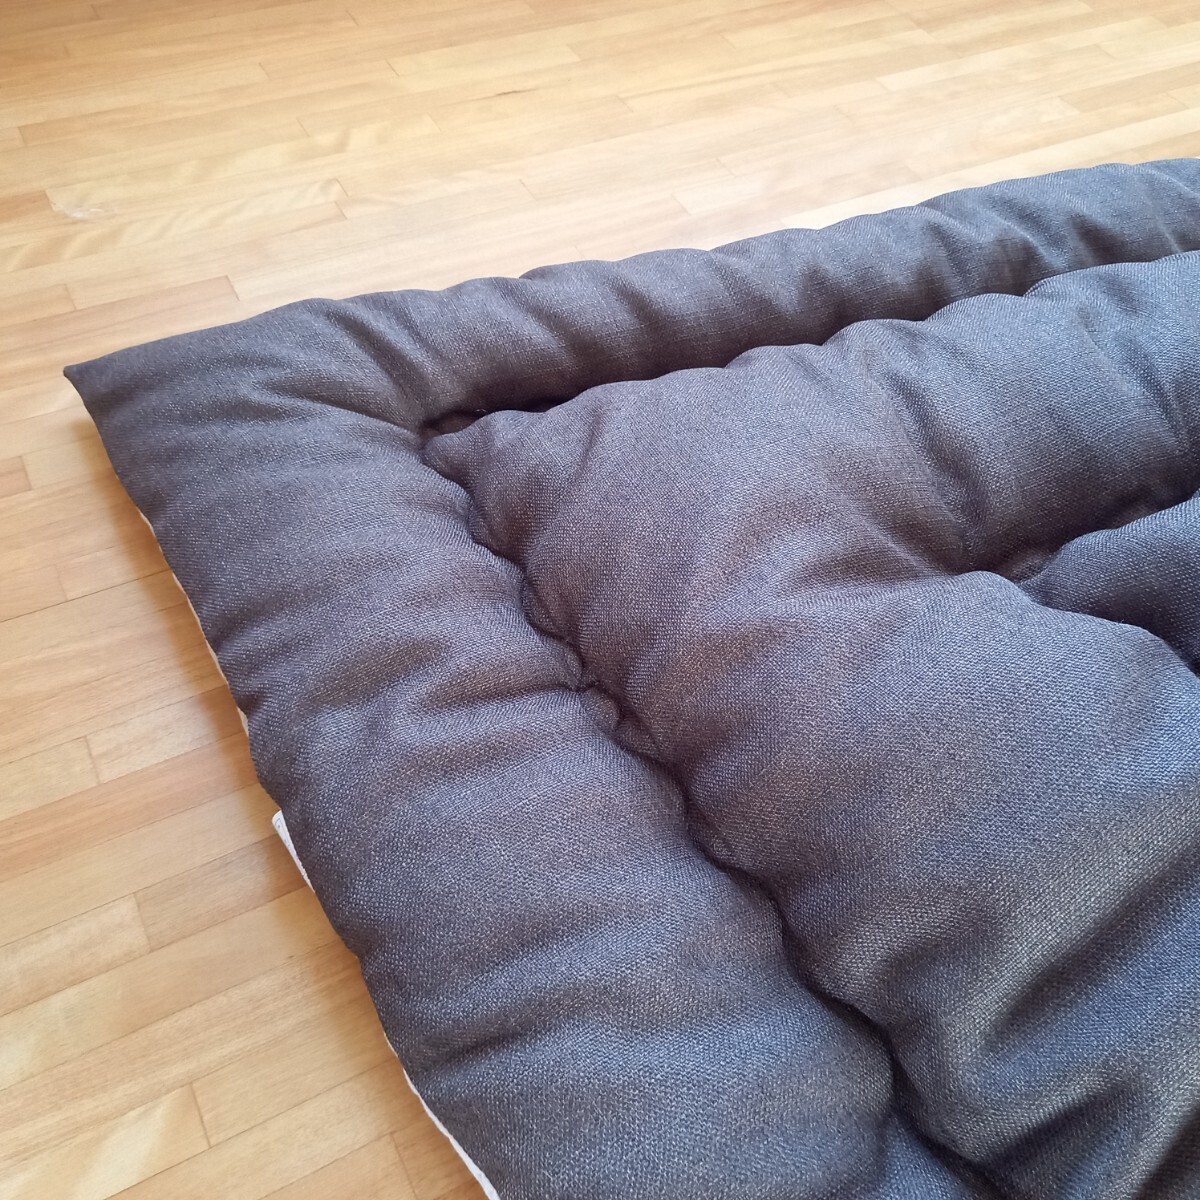  супер водоотталкивающая отделка котацу futon квадратный толстый ткань объем толщина .. Brown kotatsu котацу чистый безопасность сделано в Японии ( пуховый футон ватное одеяло матрас футон подушка )